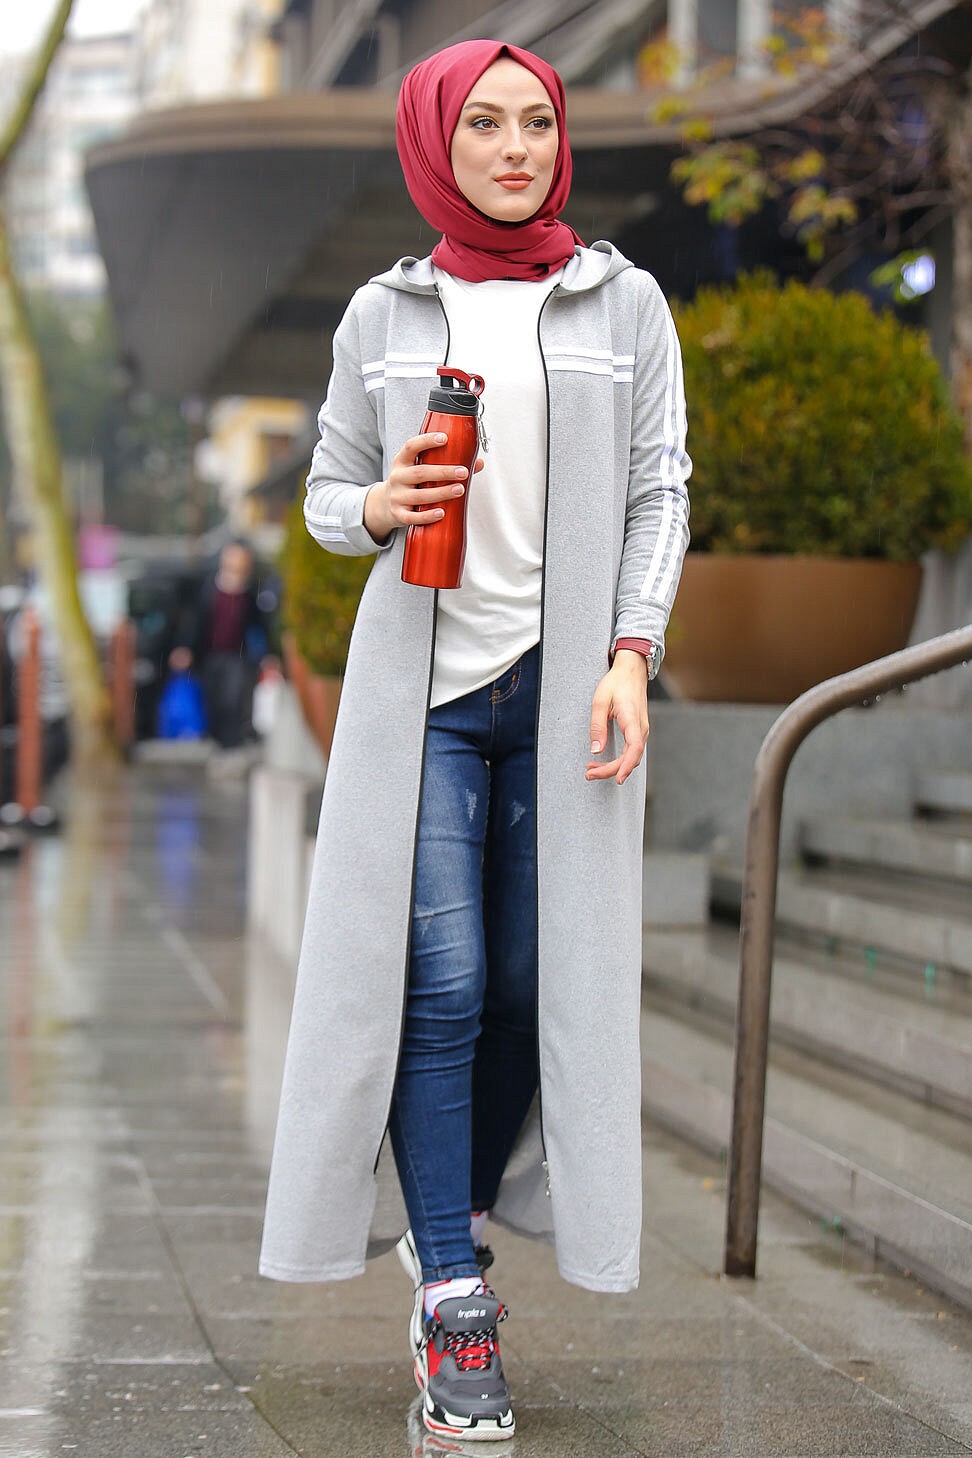 Veste longue zippée style sportswear (Robe Sport pour femme voilée) - Couleur  gris clair - Prêt à porter et accessoires sur